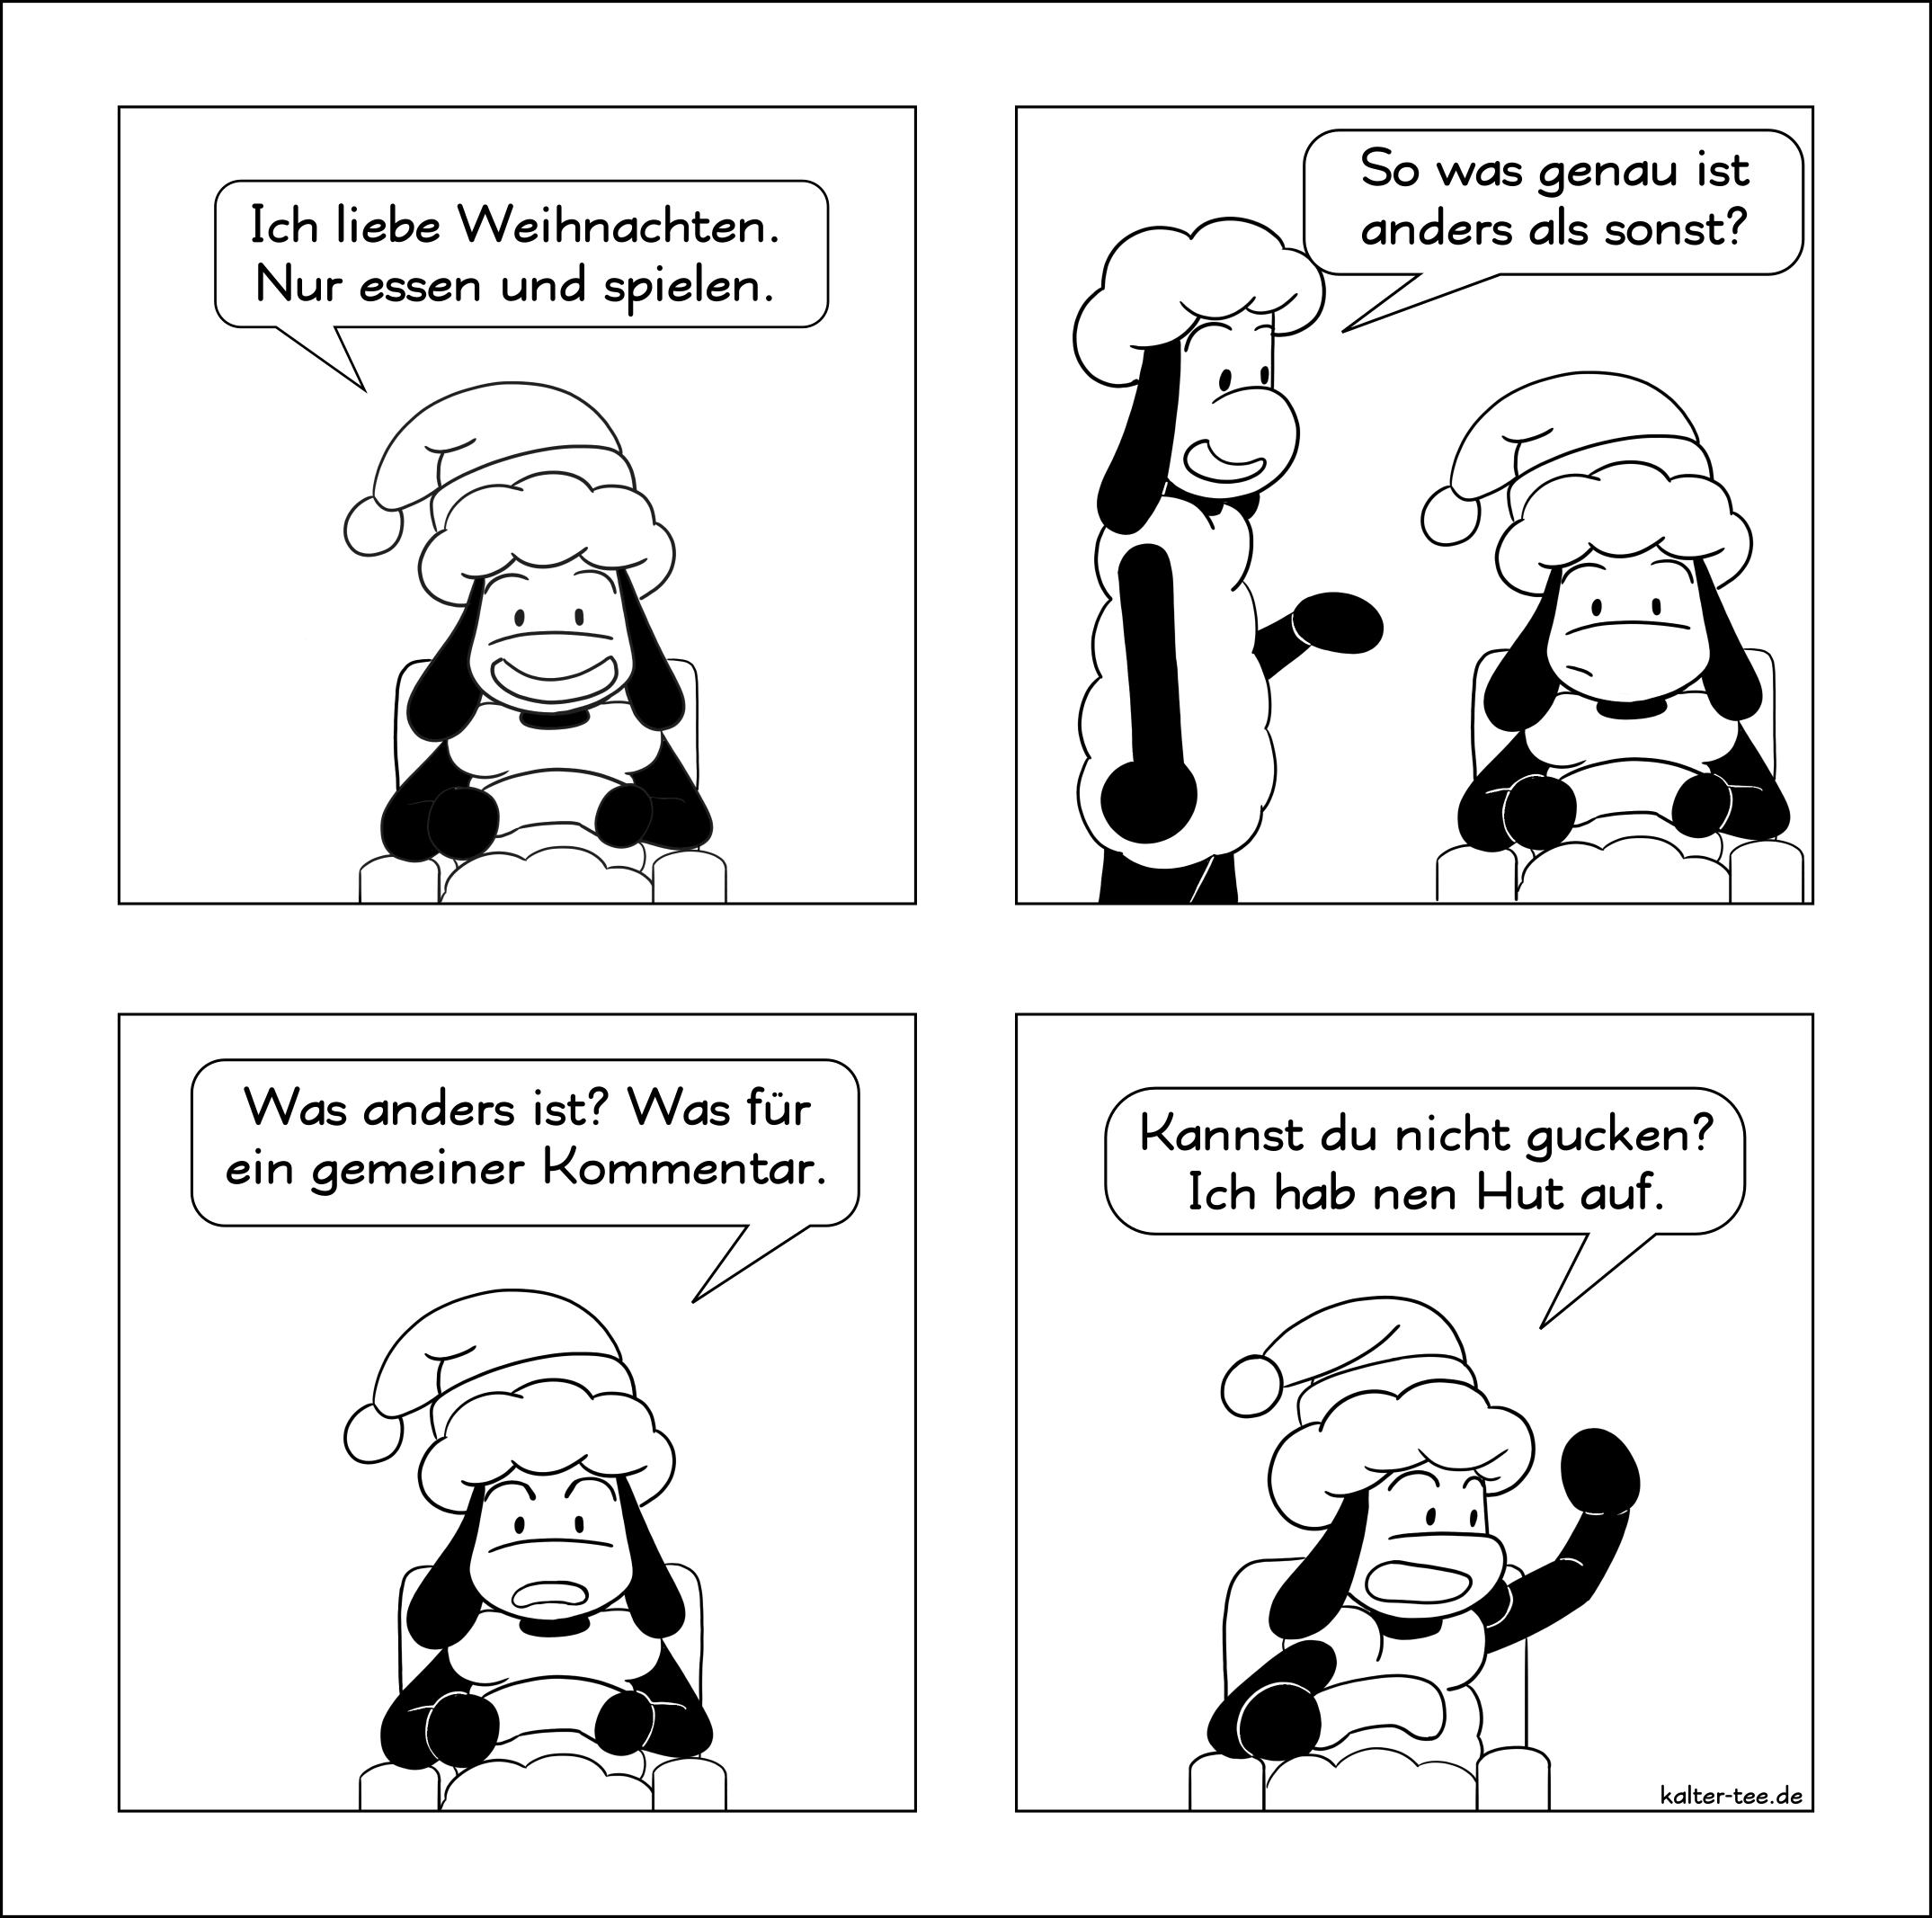 Comic über die Weihnachtszeit.